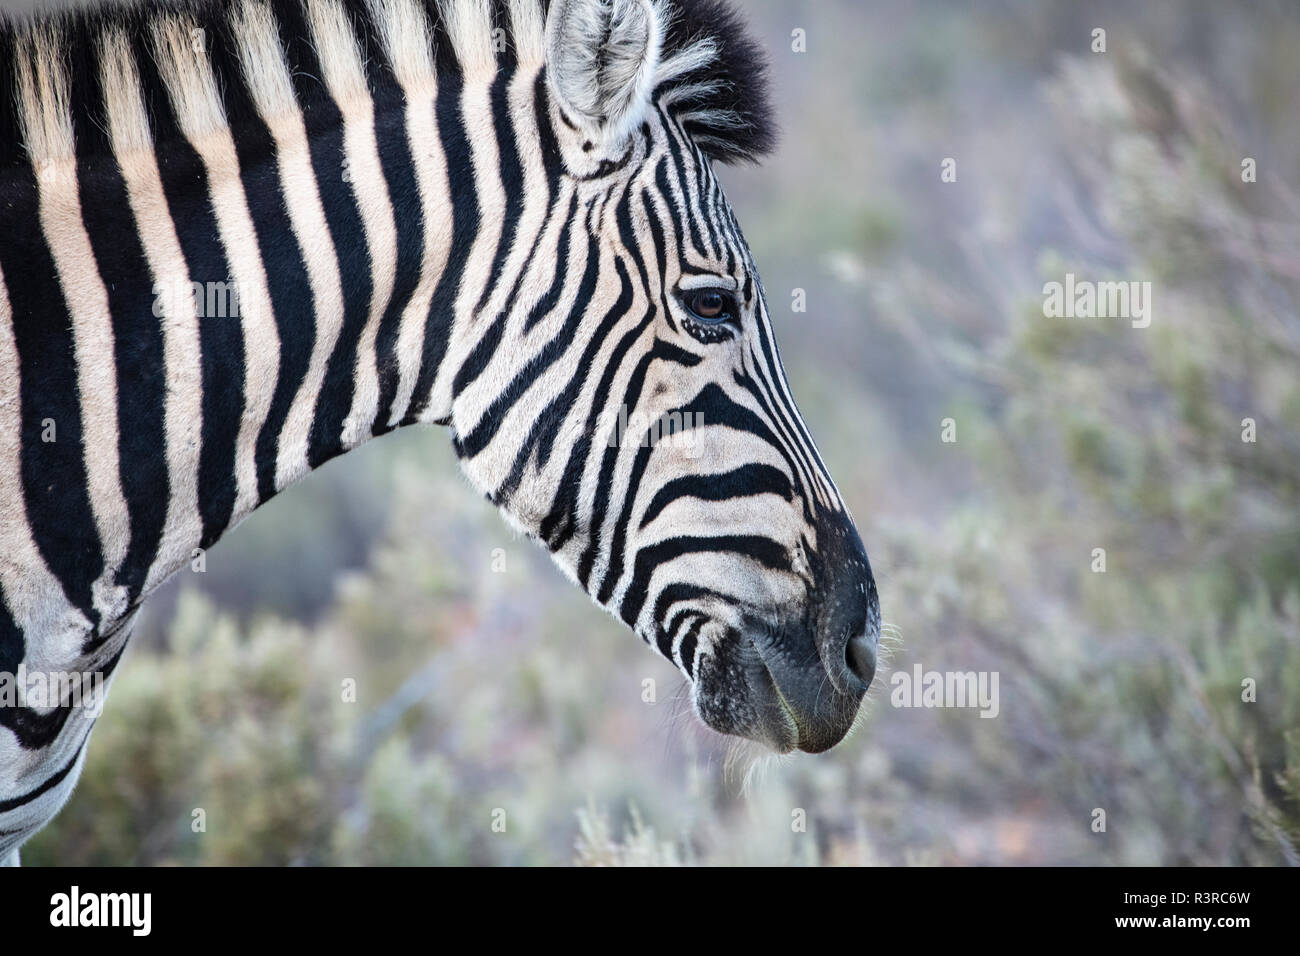 South Africa, Aquila Private Game Reserve, Zebra, Equus quagga Stock Photo